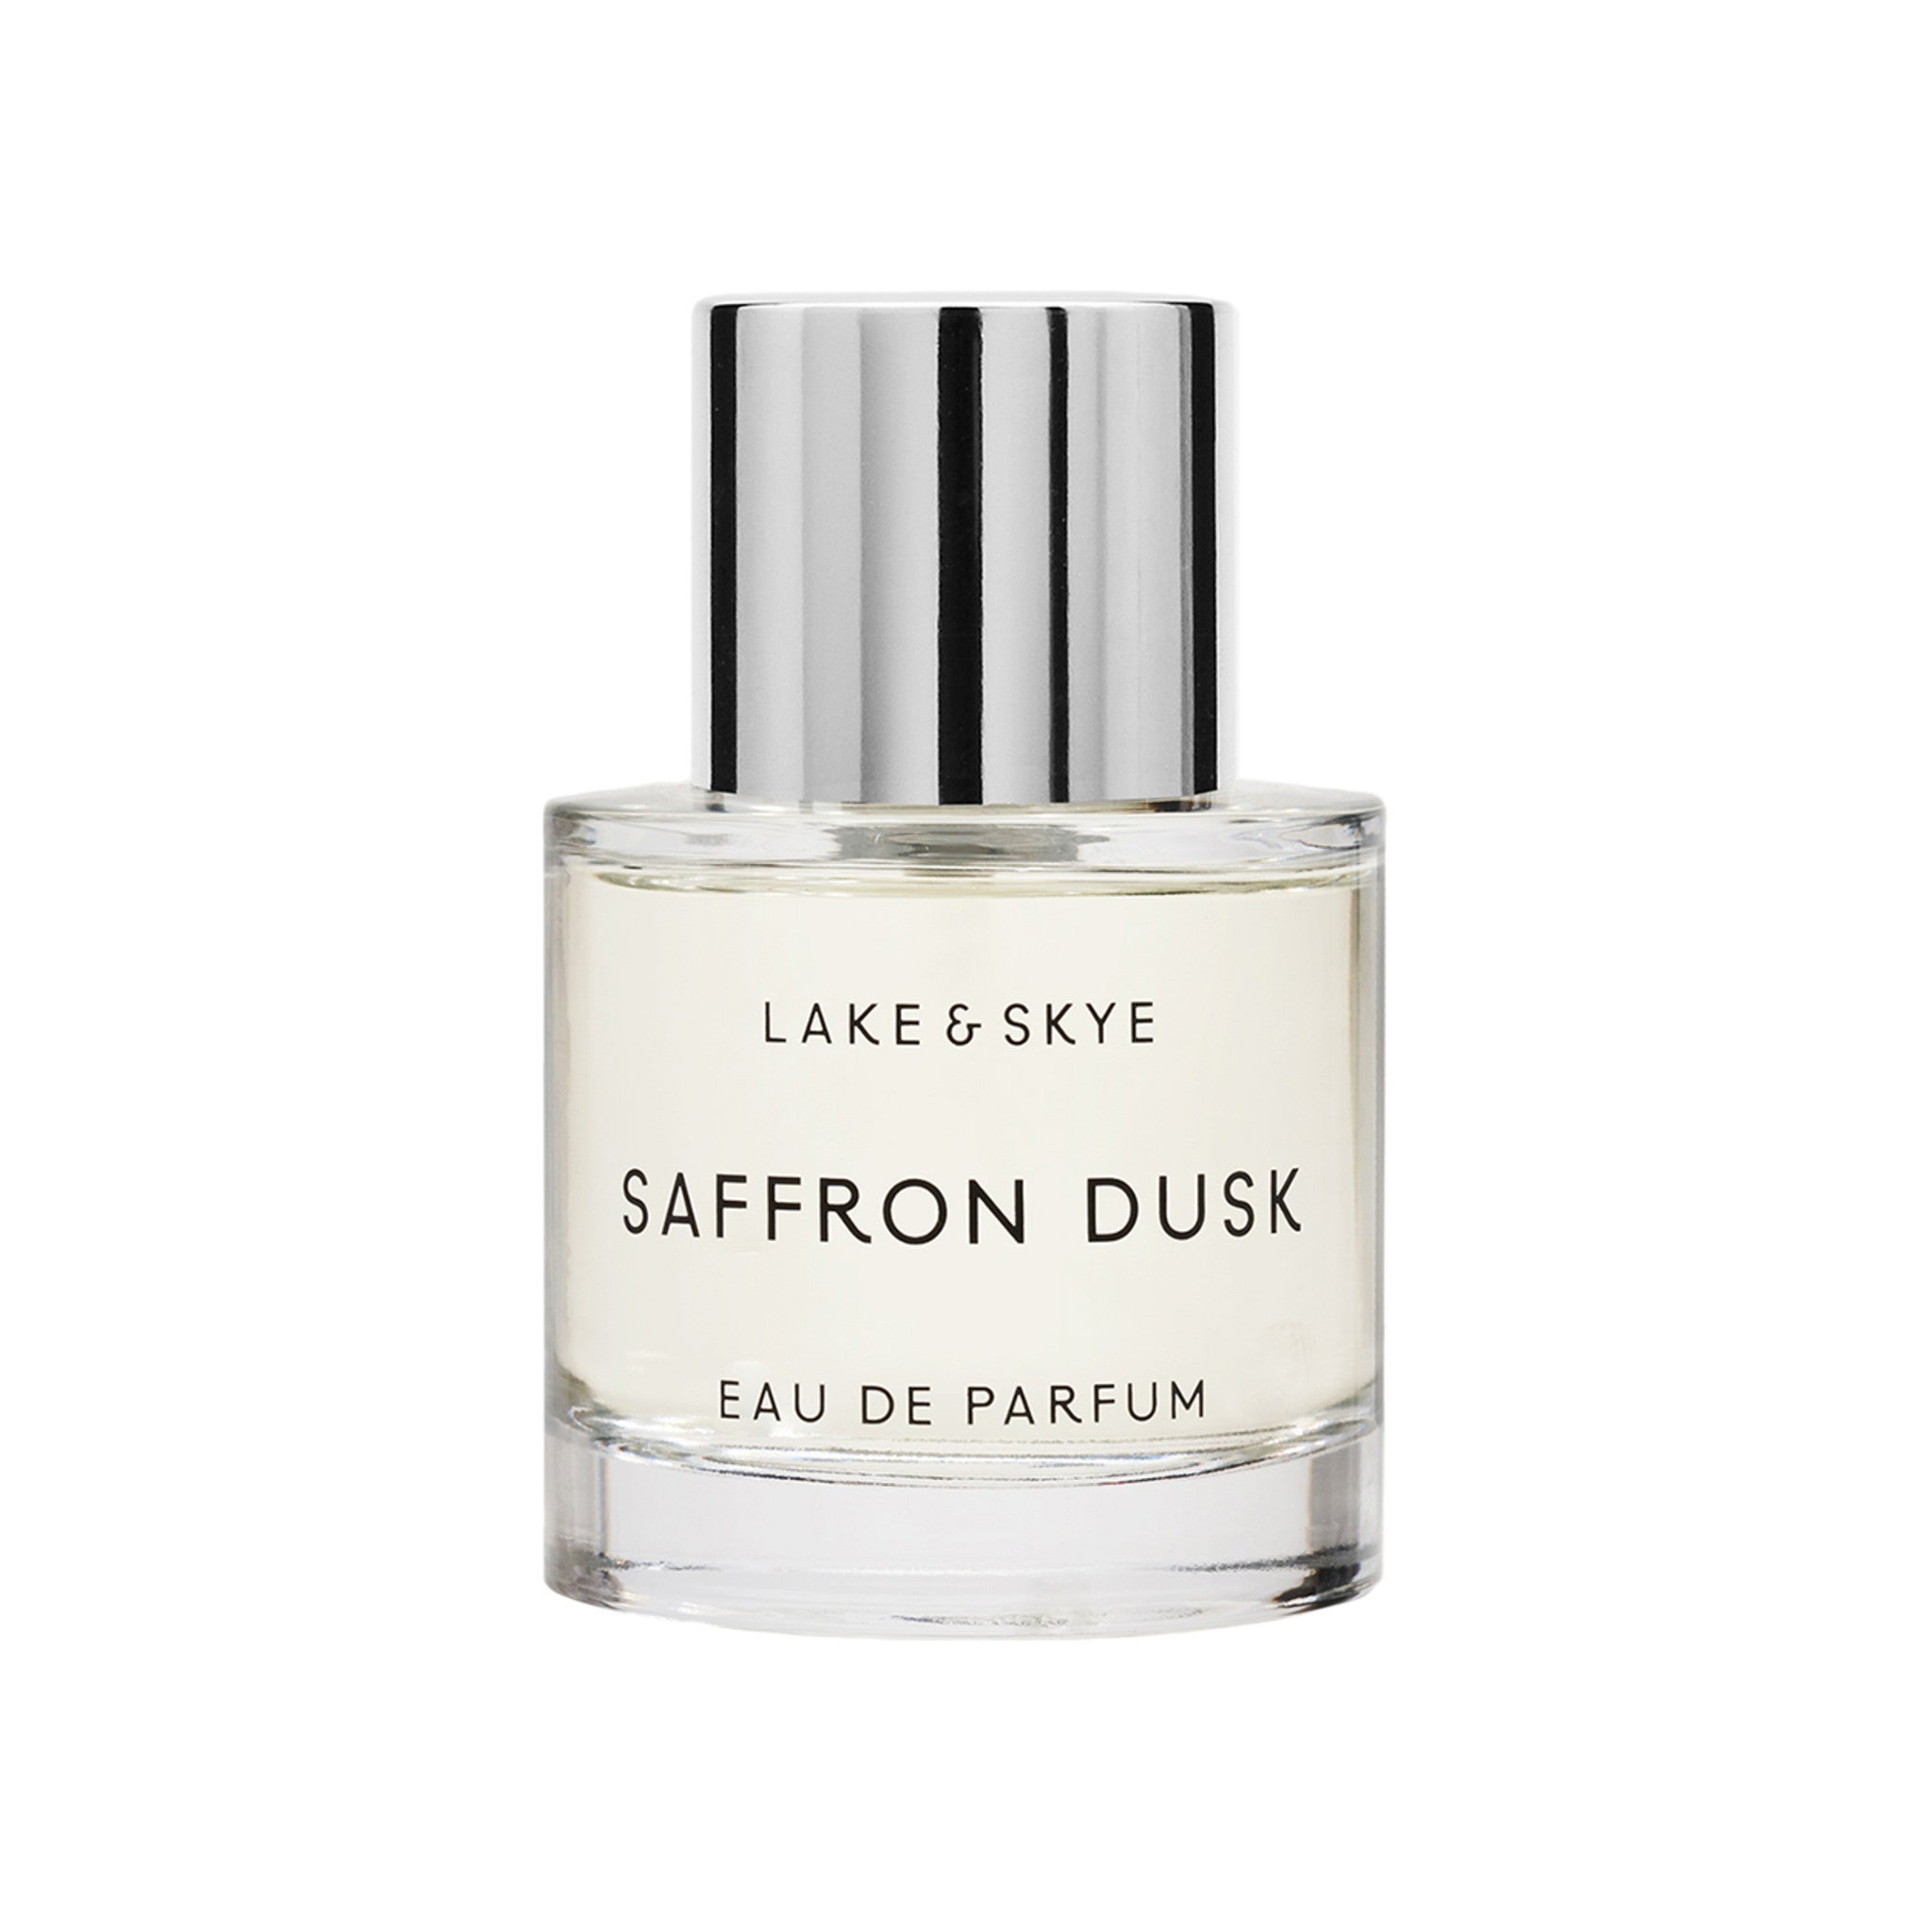 Lake & Skye Saffron Dusk Eau de Parfum main image.